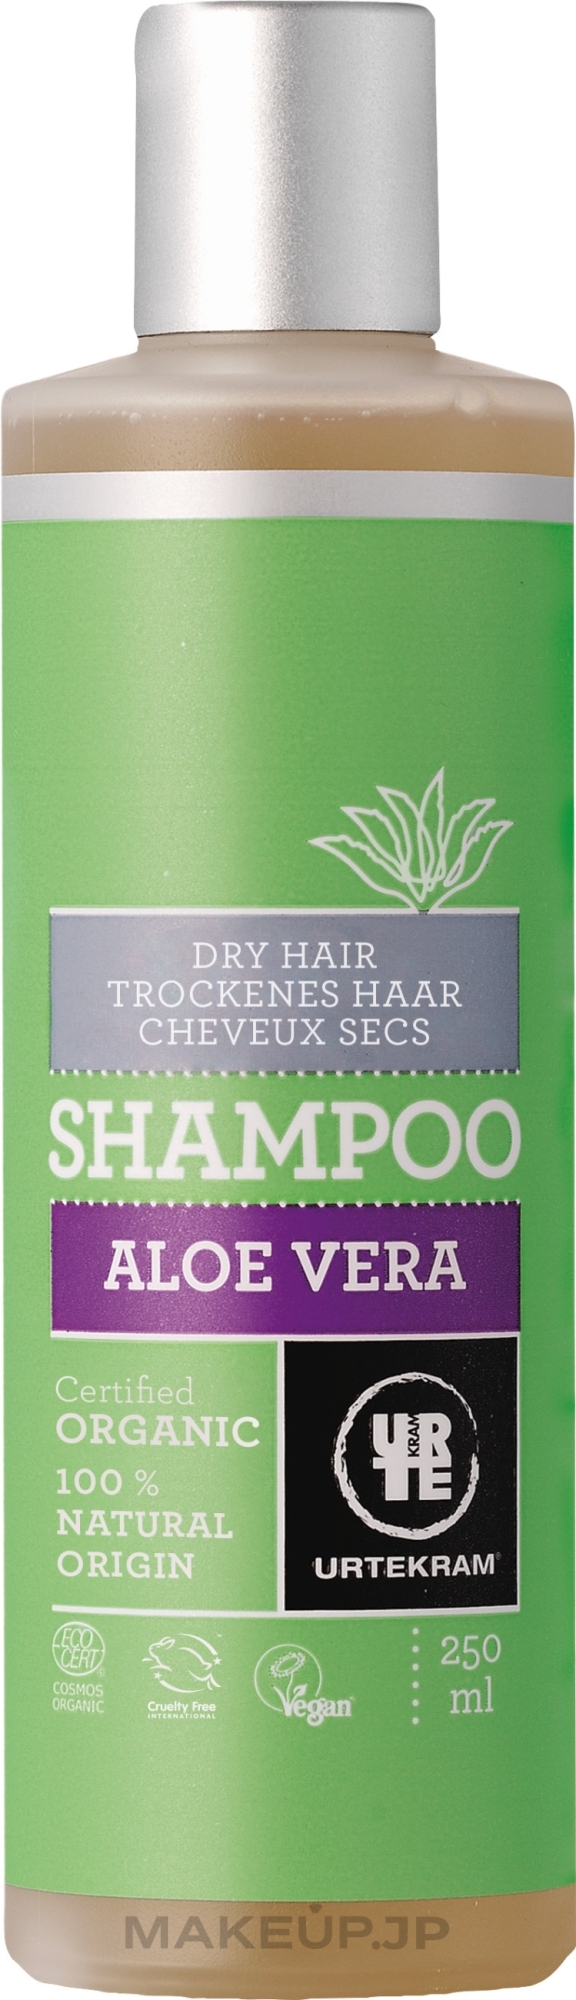 Dry Hair Shampoo "Aloe Vera" - Urtekram Aloe Vera Shampoo Dry Hair — photo 250 ml